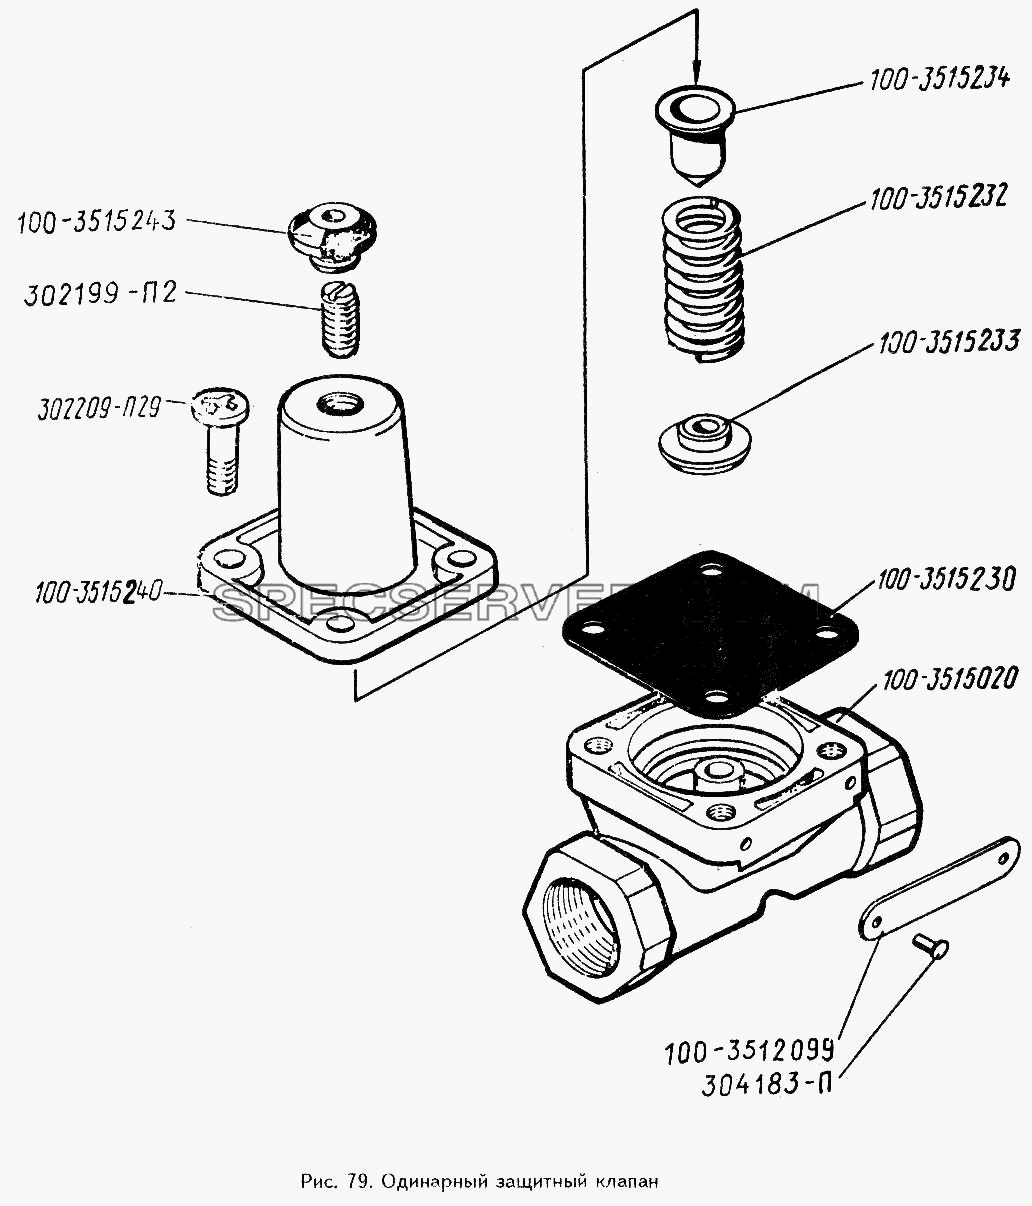 Одинарный защитный клапан для ЗИЛ 442160 (список запасных частей)